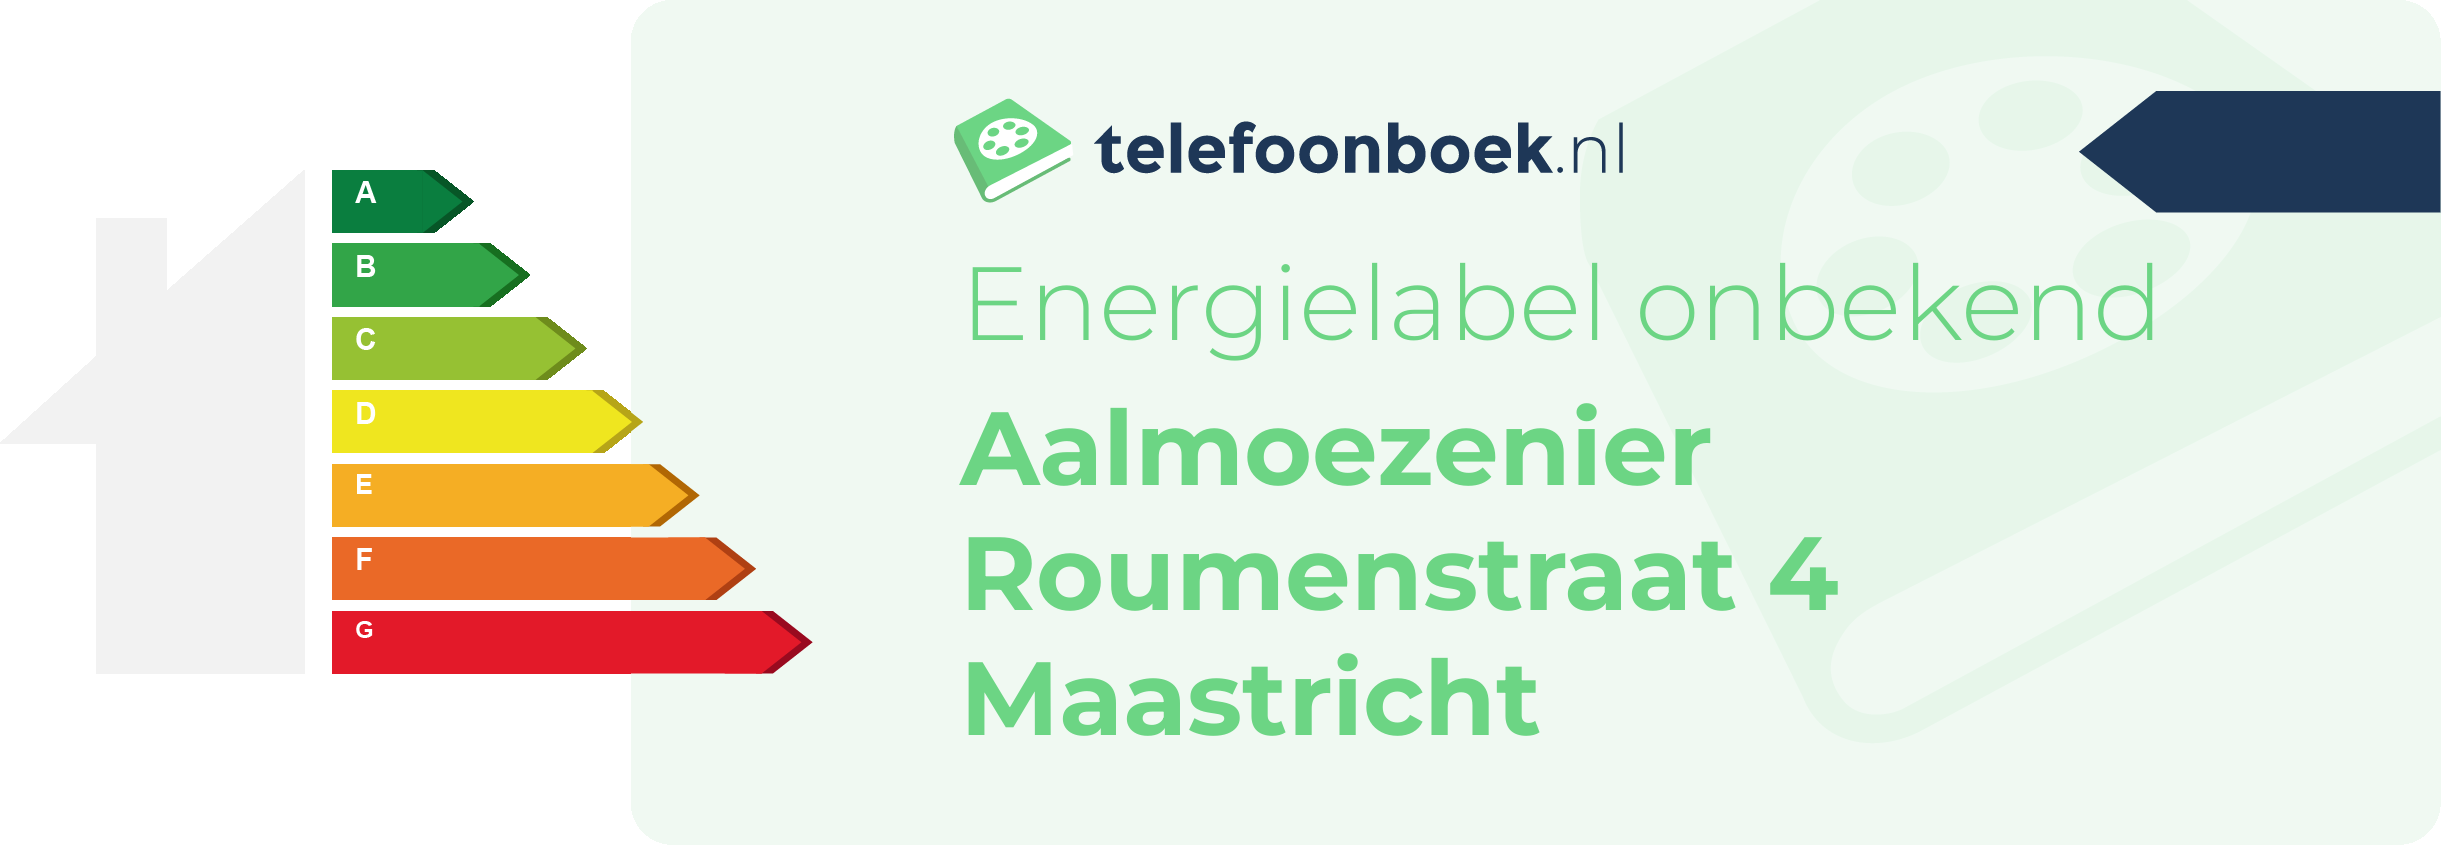 Energielabel Aalmoezenier Roumenstraat 4 Maastricht